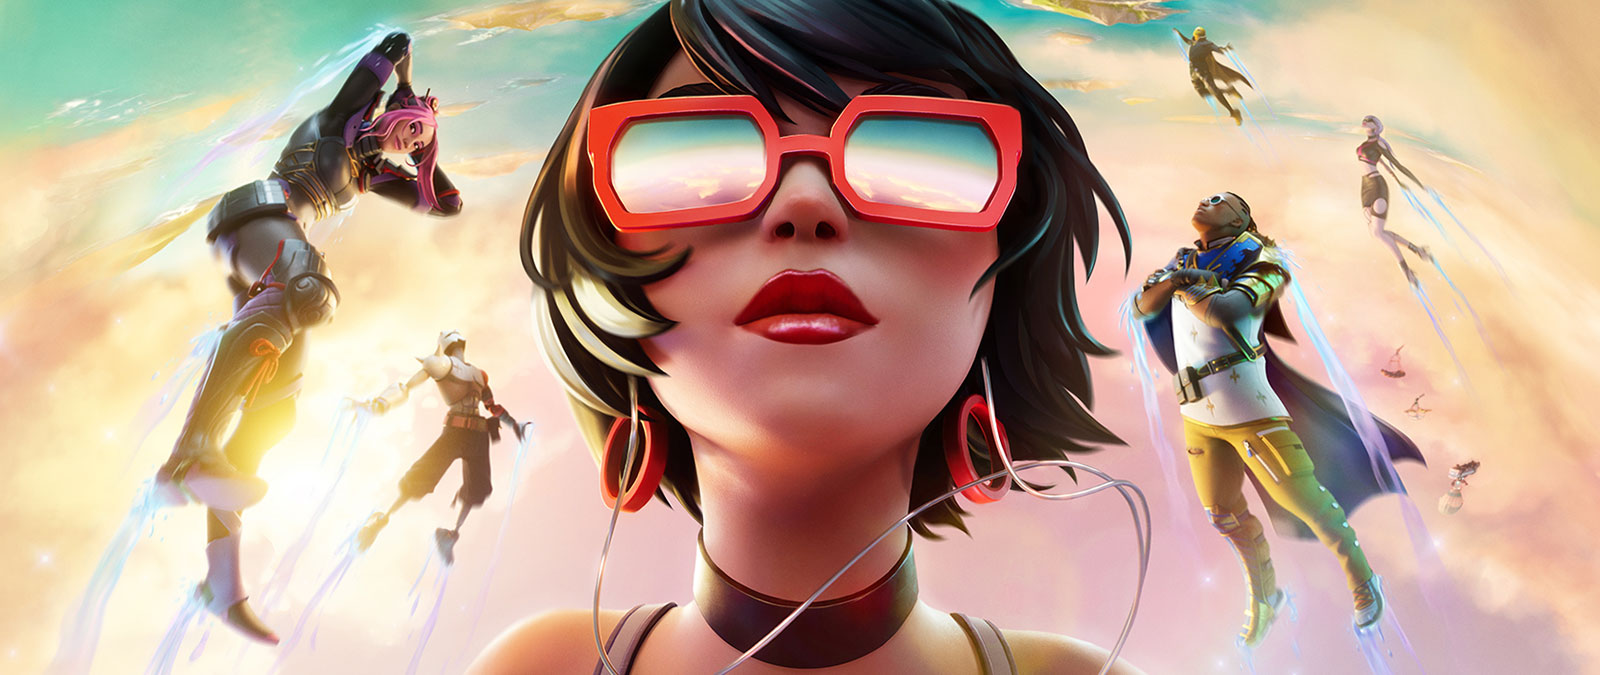 Una ragazza con gli occhiali da sole rossi galleggia tra le nuvole con altri personaggi in un cielo color pastello.